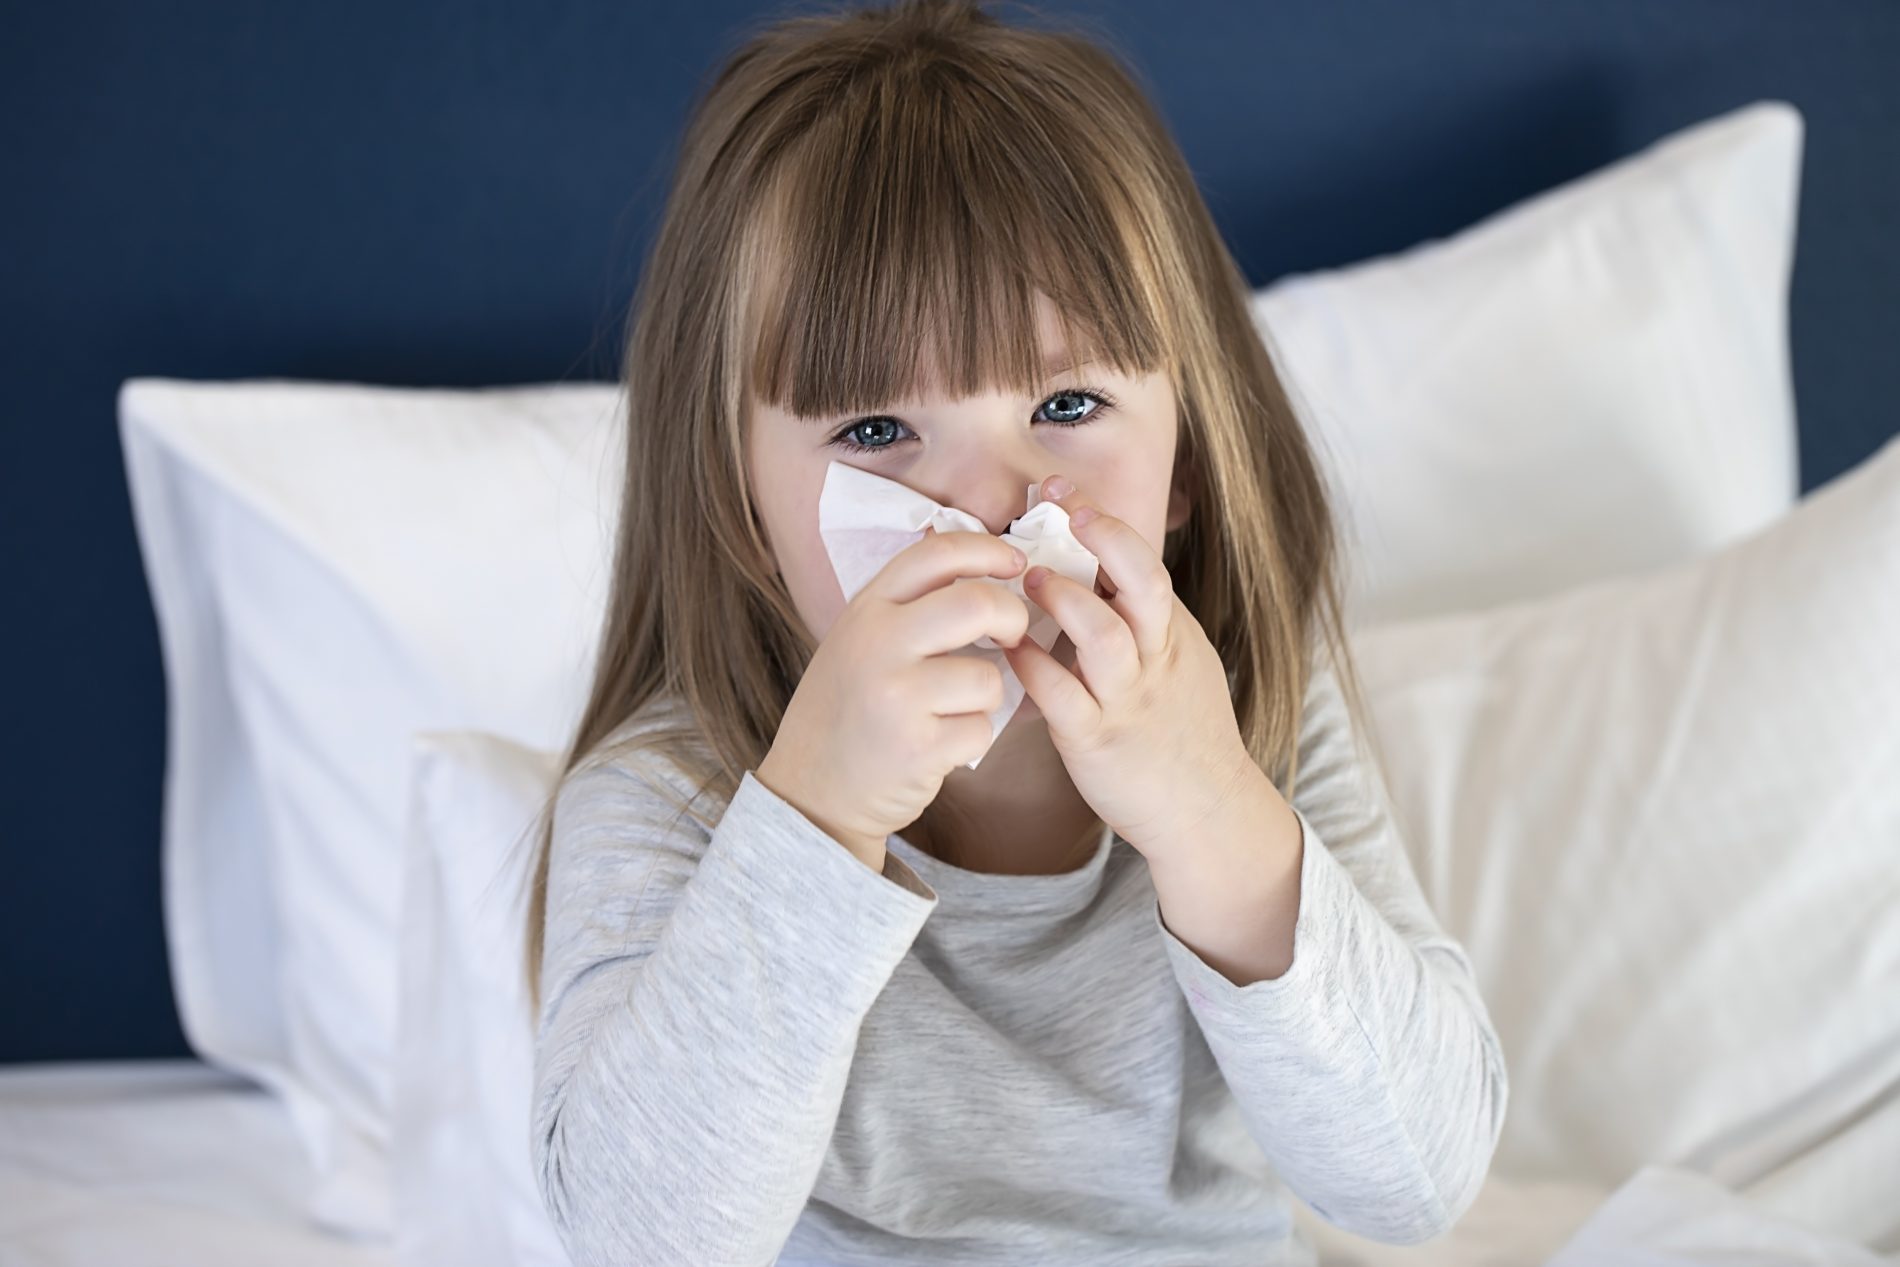 raffreddore: cos'è, cause, sintomi, cure e rimedi naturali